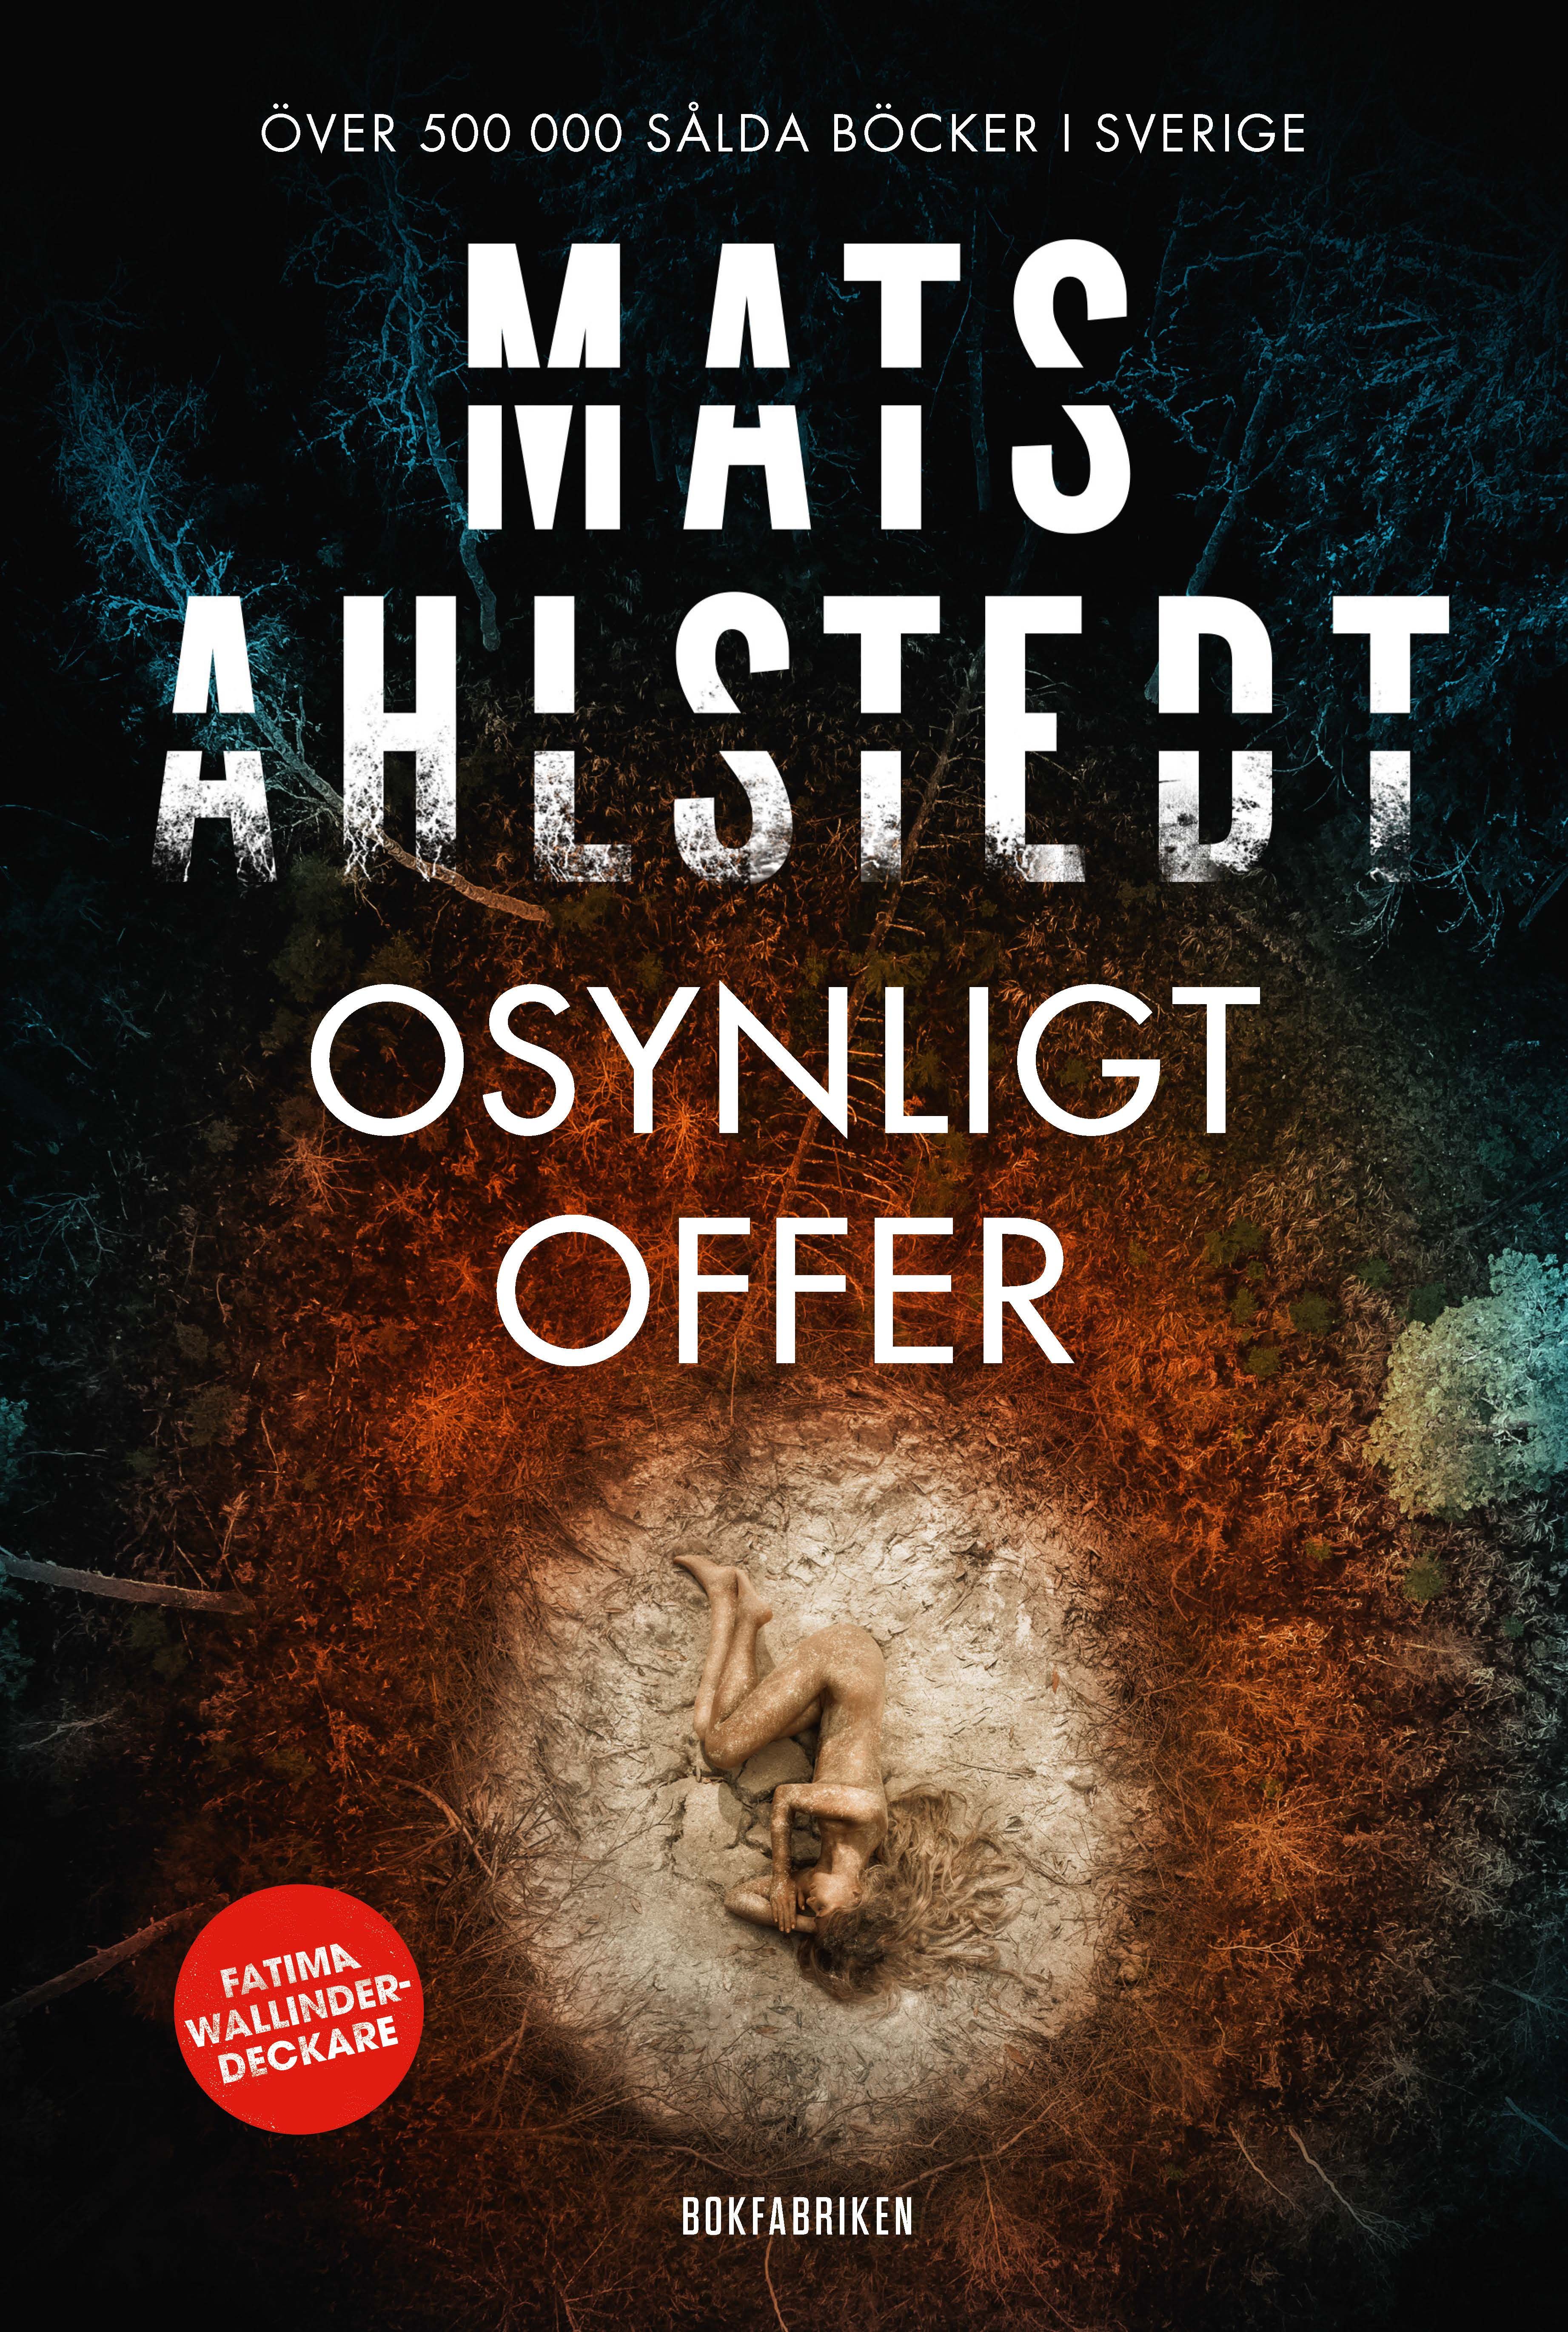 Osynligt offer, e-bog af Mats Ahlstedt